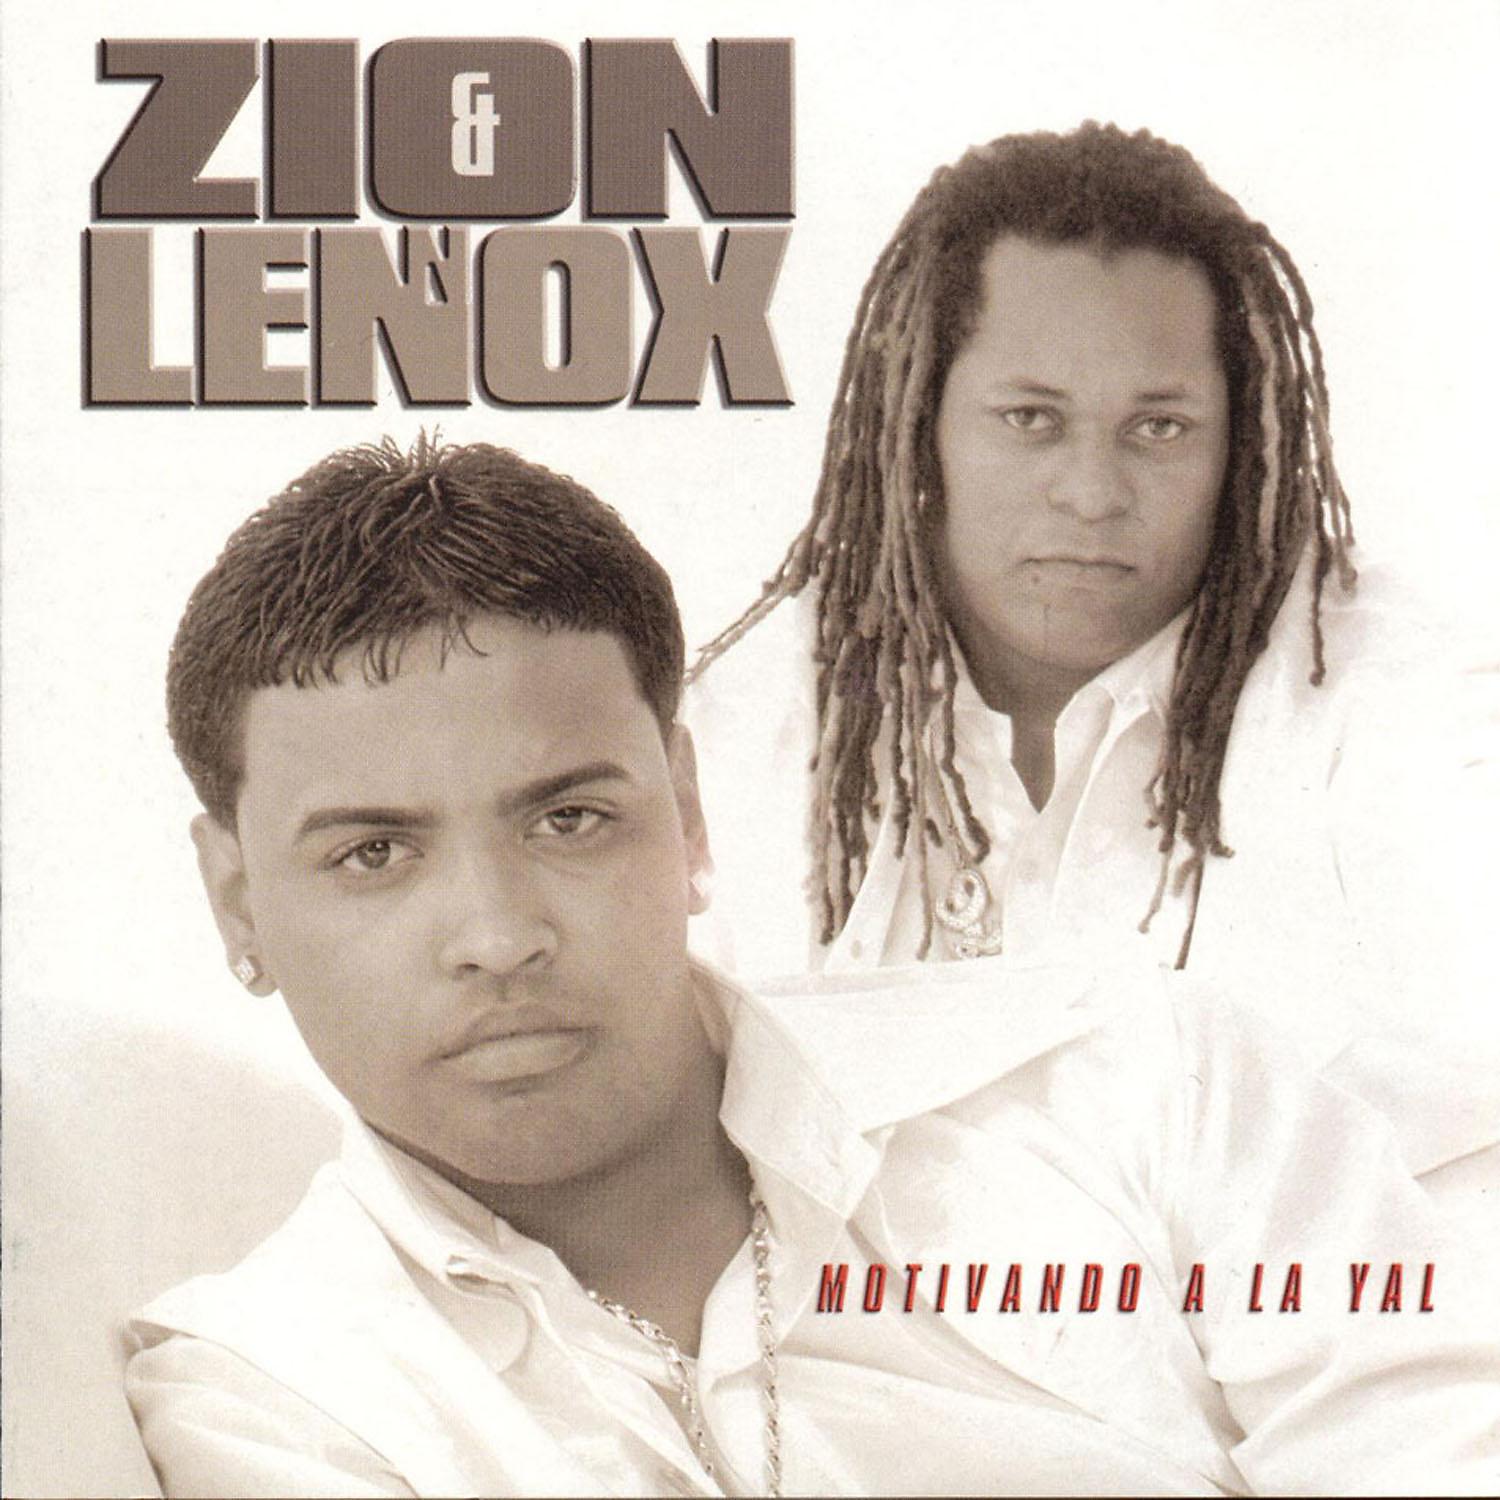 Daddy yankee yo voy. Zion & Lennox. Zion y Lennox, Daddy Yankee. Motivando a la Yal Zion y Lennox. Daddy Yankee album Cover.